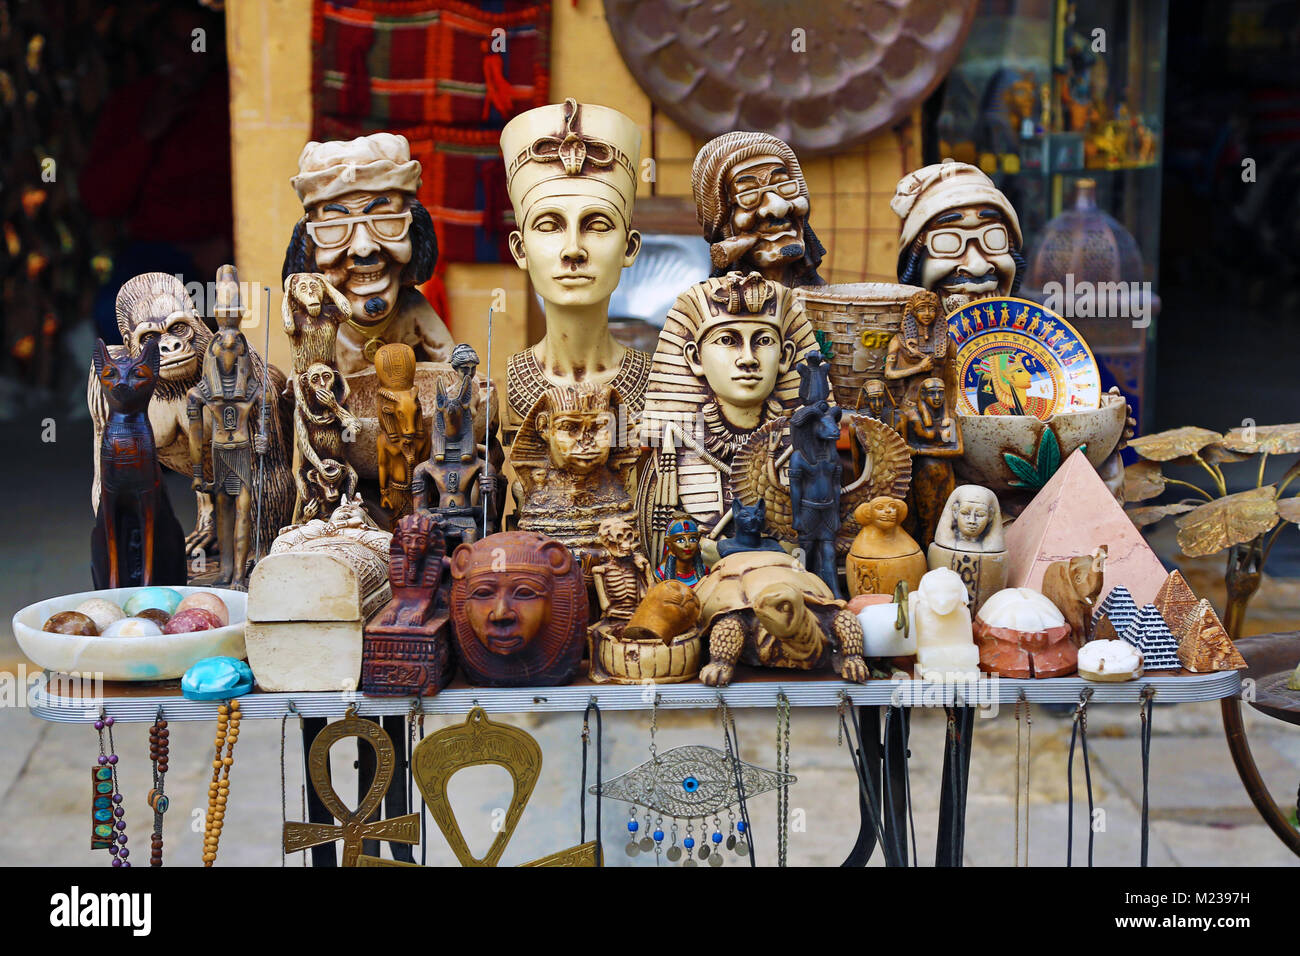 Scène de rue avec des magasins vendant des souvenirs touristiques au Caire, Egypte Banque D'Images